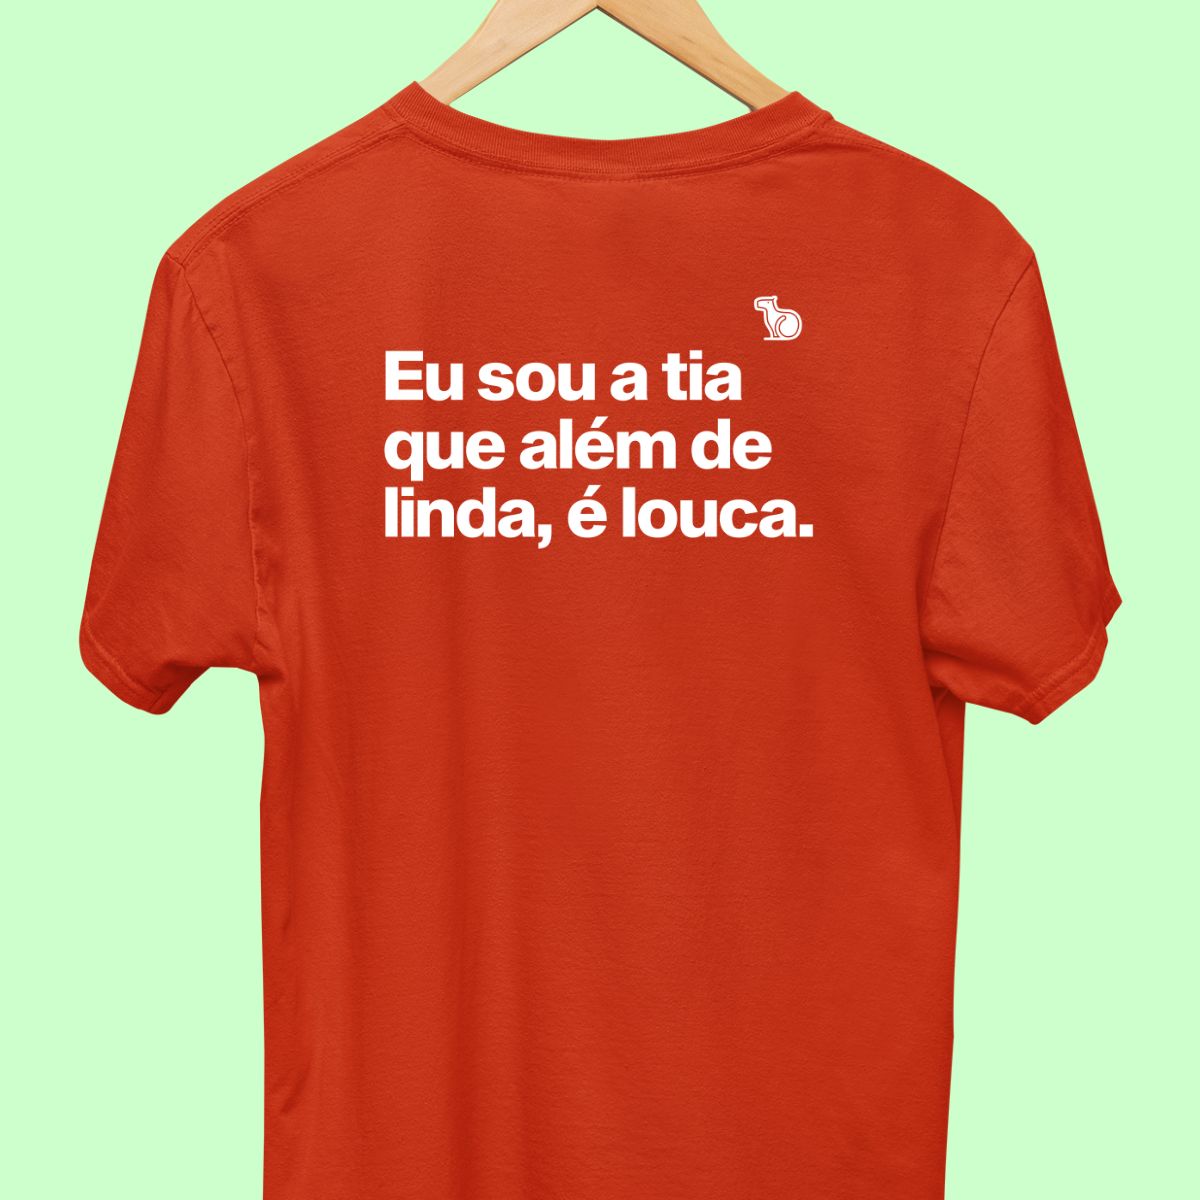 Camiseta com a frase "Eu sou a tia que além de linda, é louca." masculina vermelha.